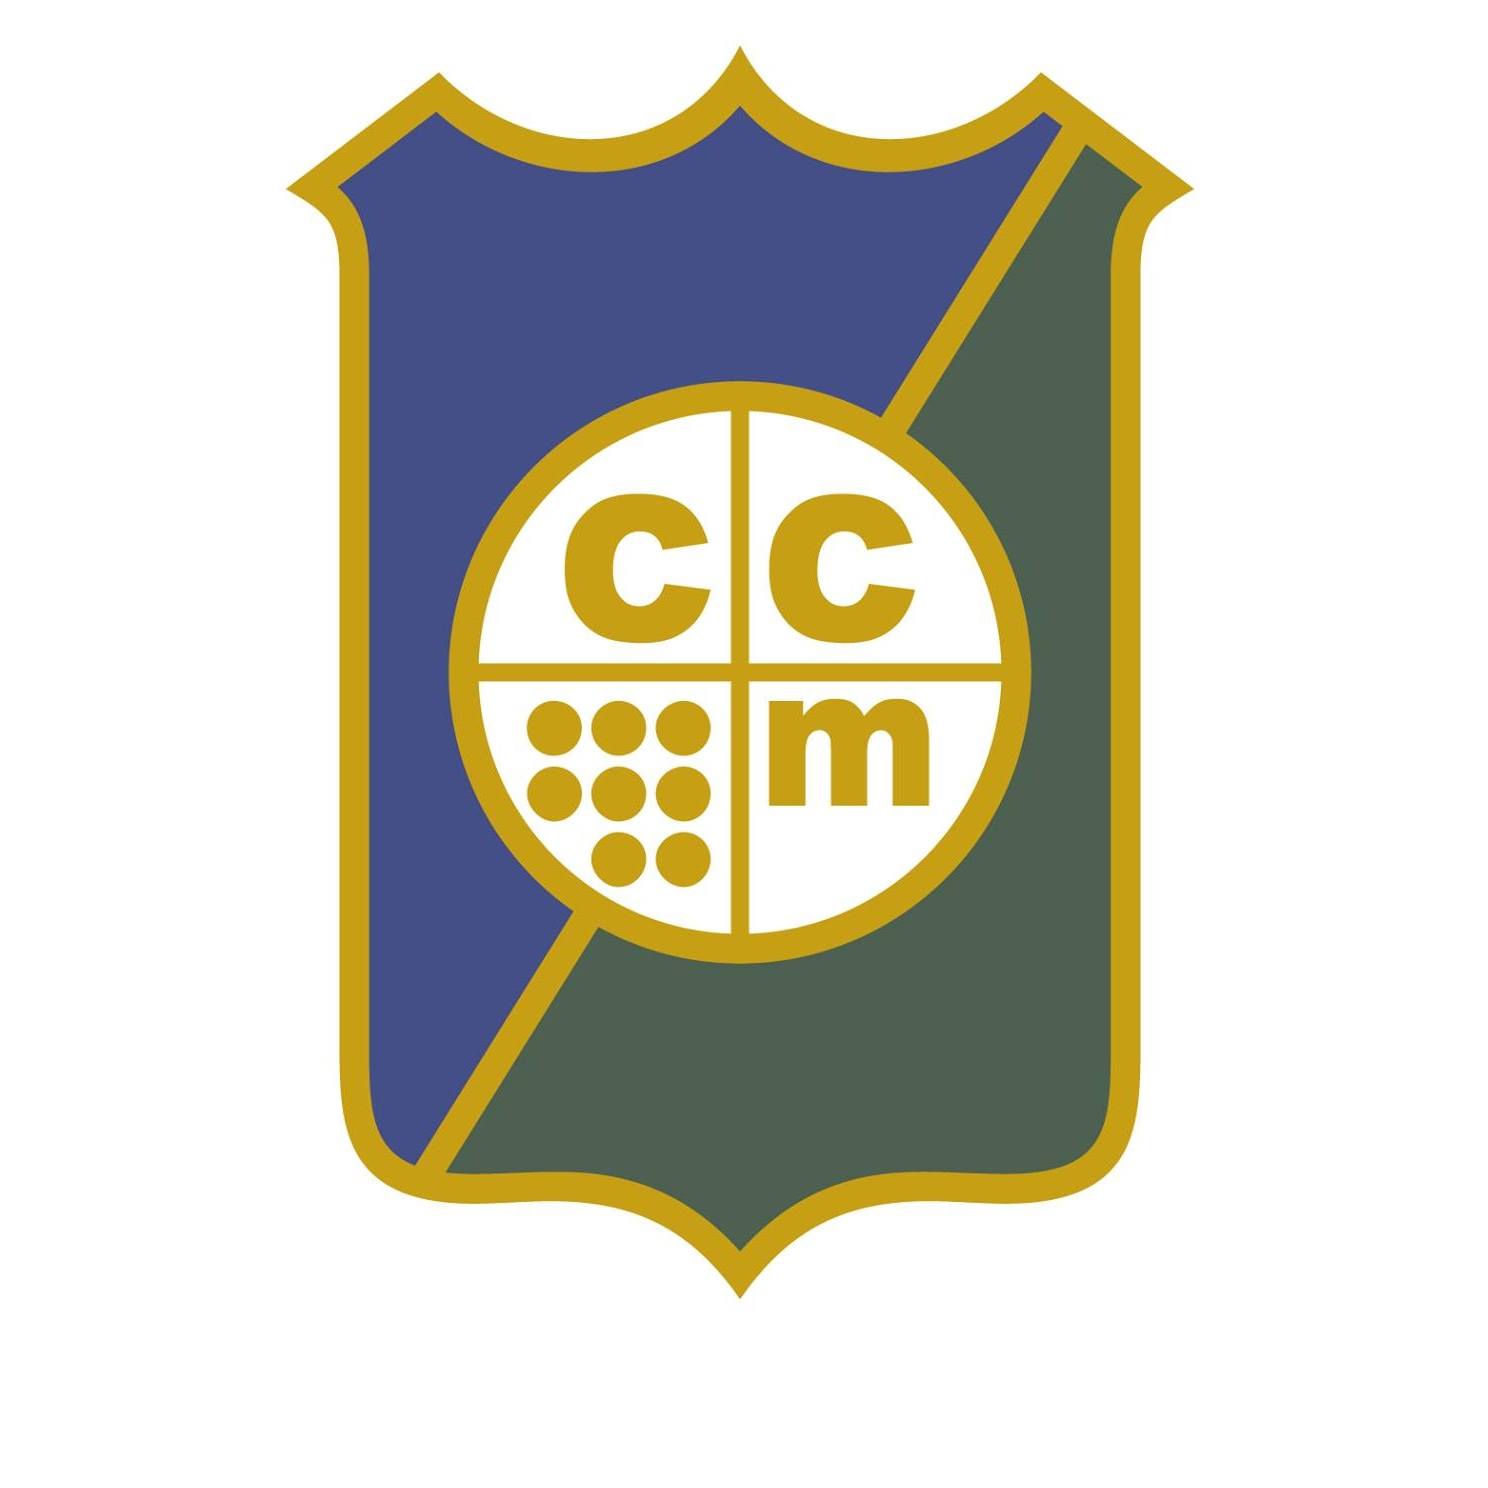 Club de Campo Mendoza